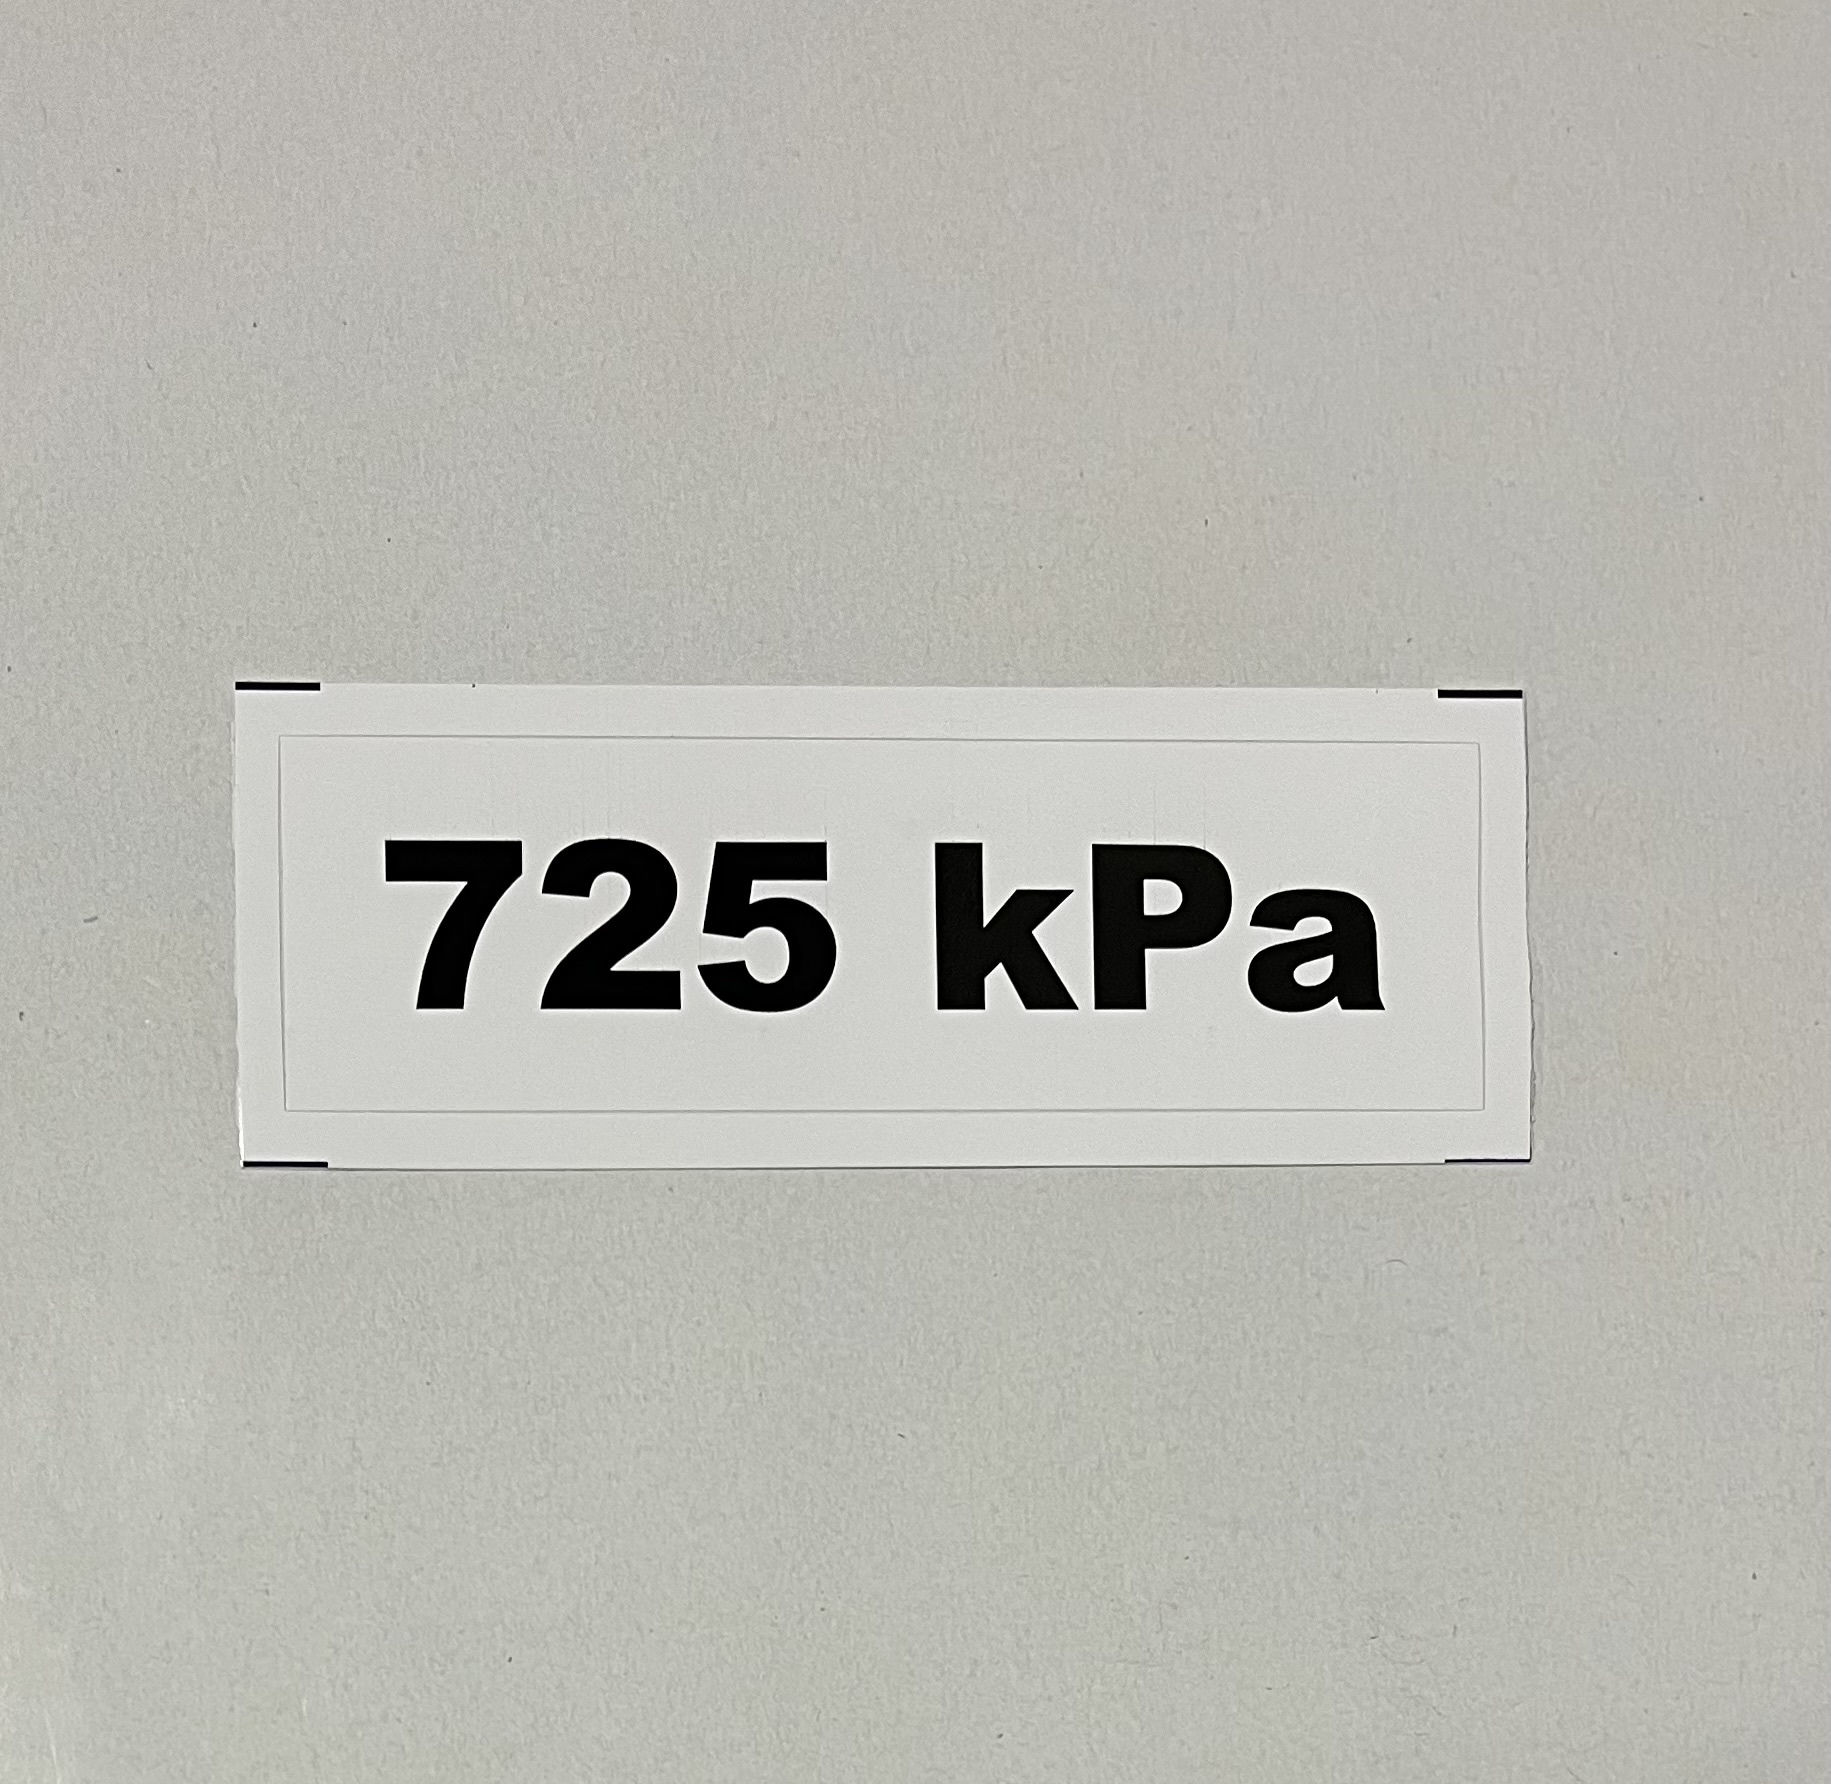 Označenie kPa 725